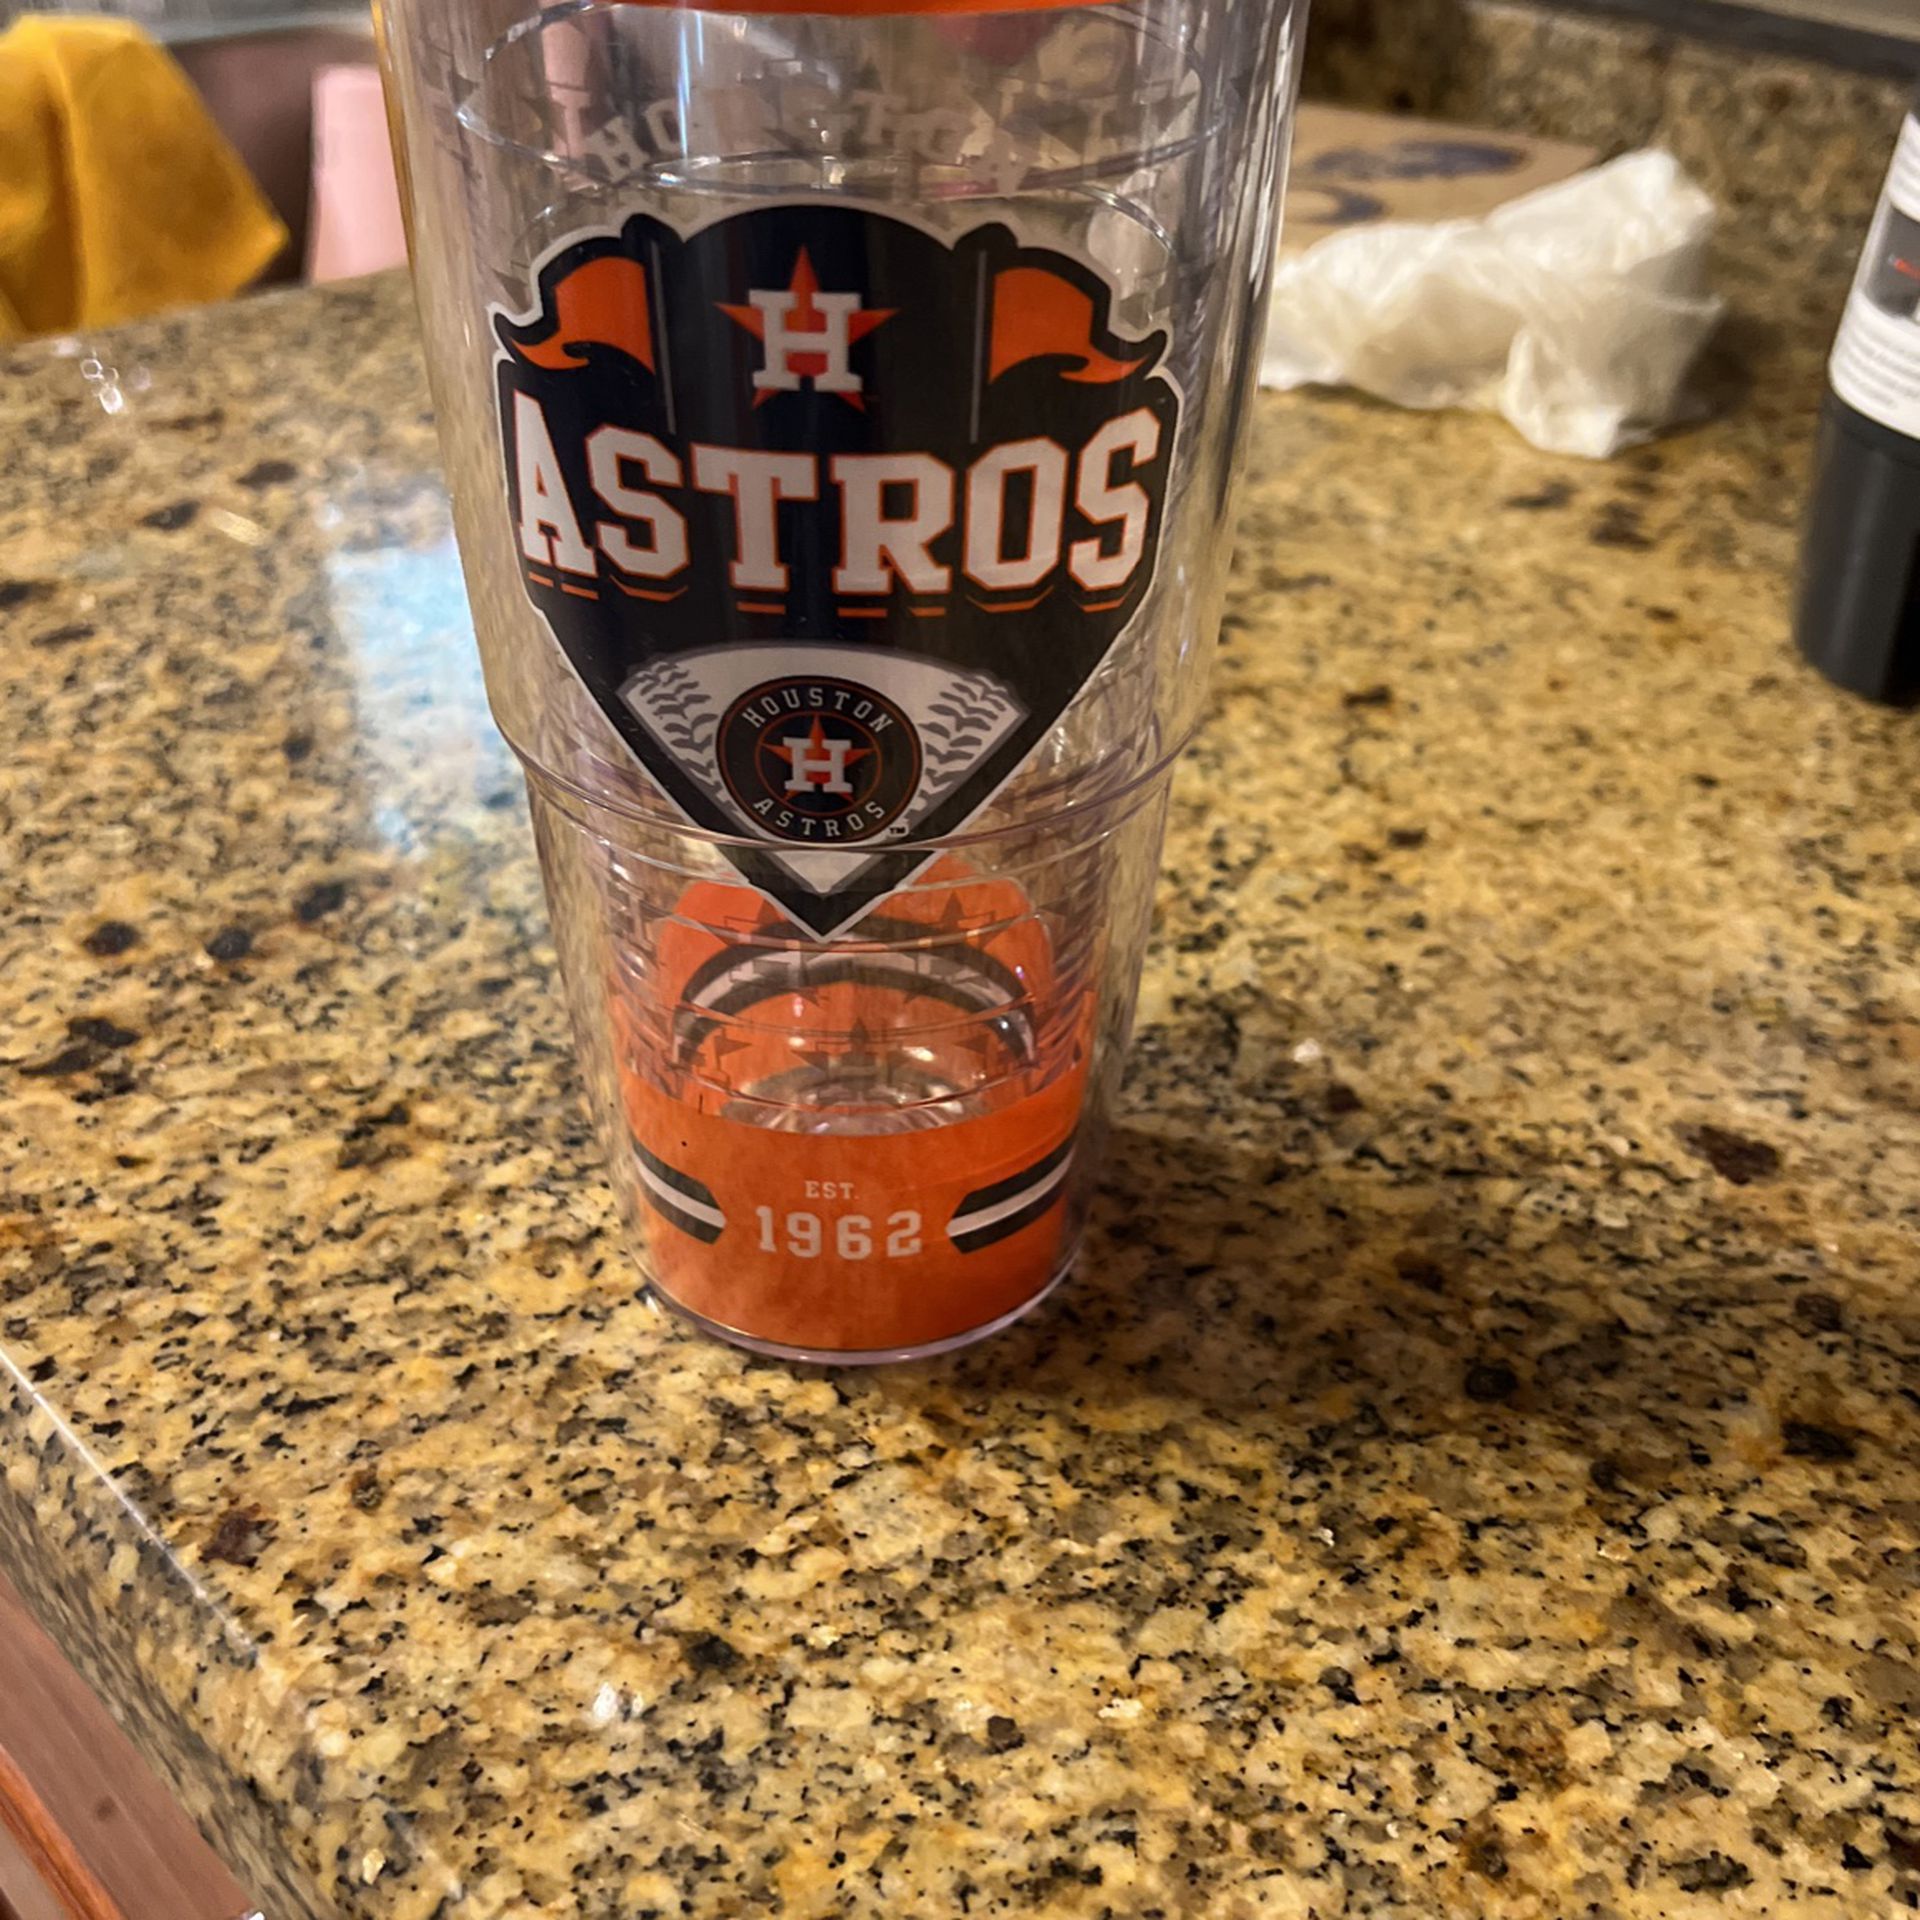 Astros Cup